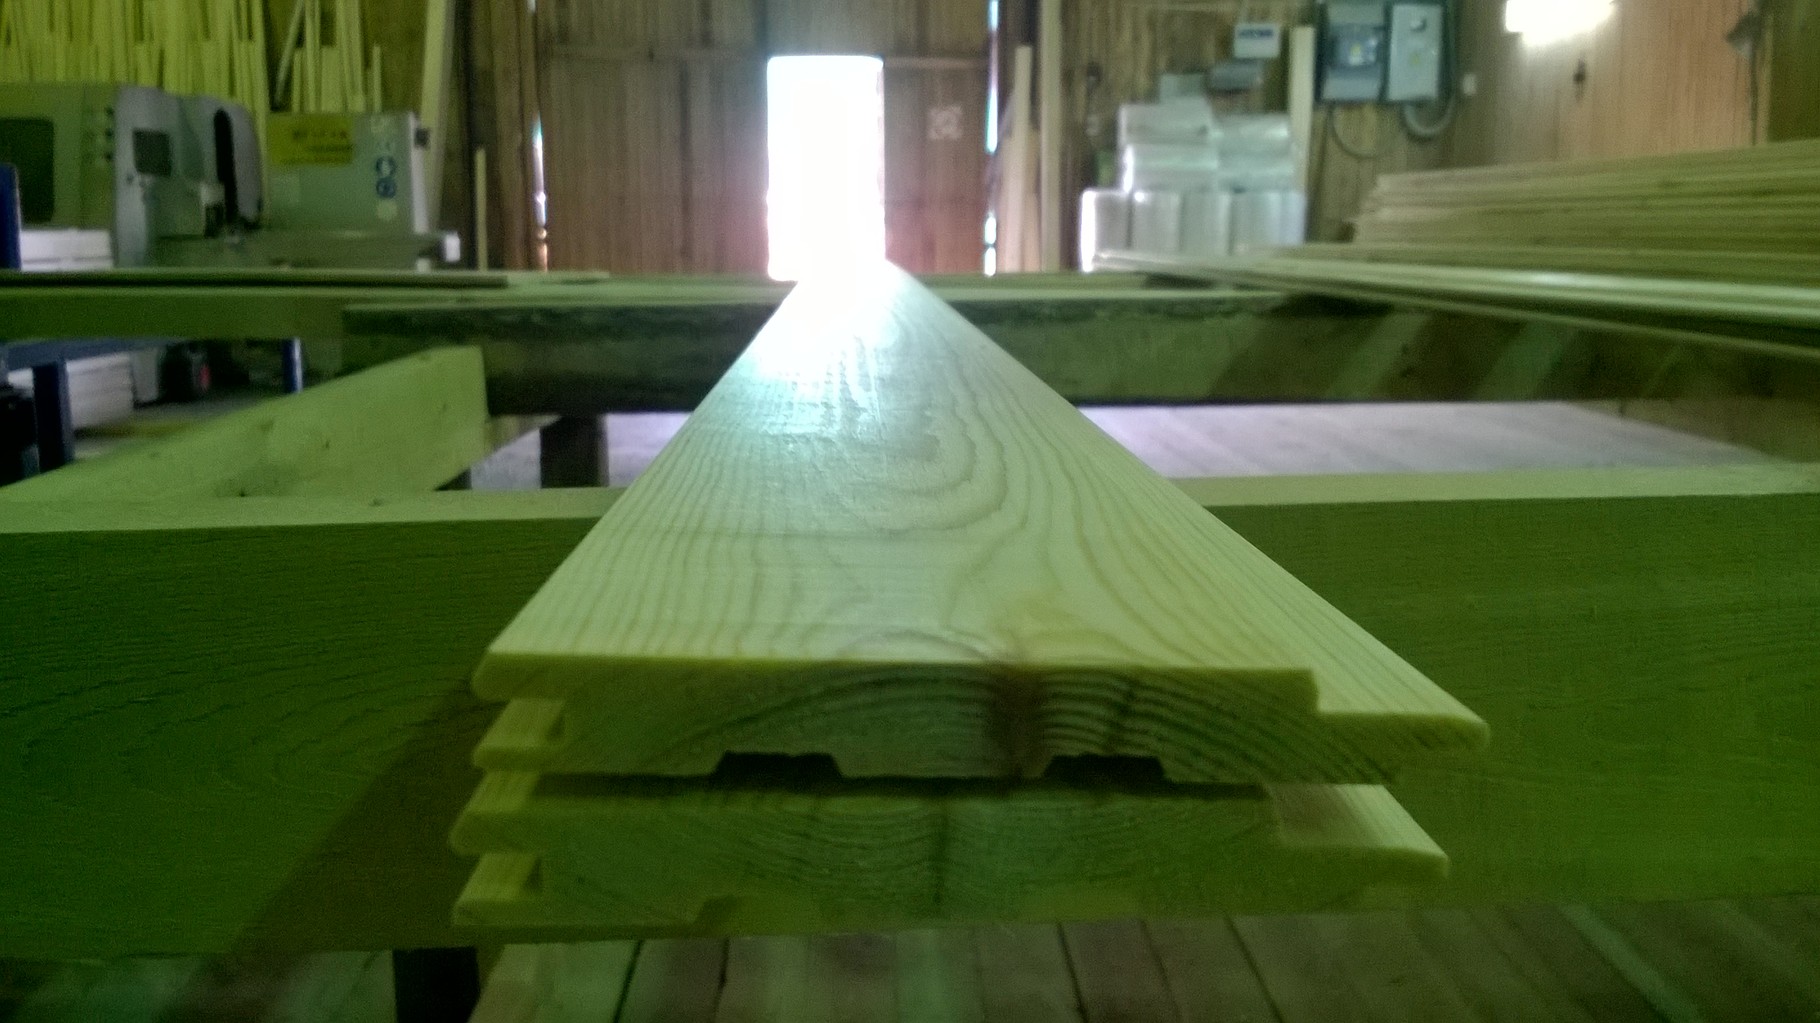 Timber Solutions модернизация и оптимизация процессов лесопильных, деревообрабатывающих и мебельных  производств 18